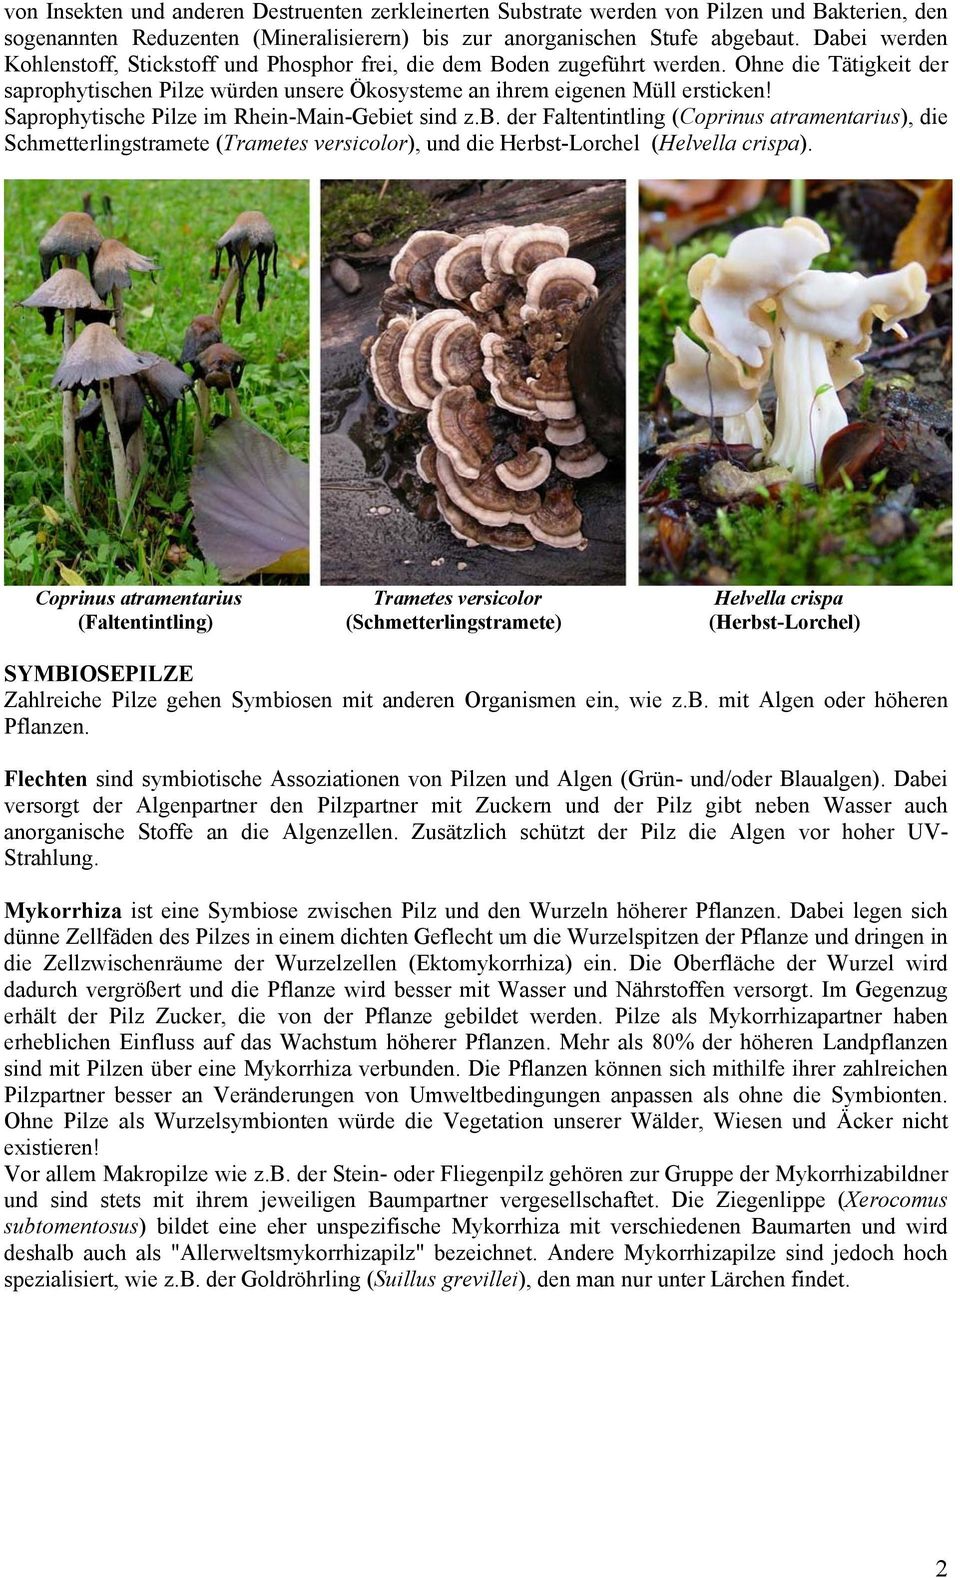 Saprophytische Pilze im Rhein-Main-Gebiet sind z.b. der Faltentintling (Coprinus atramentarius), die Schmetterlingstramete (Trametes versicolor), und die Herbst-Lorchel (Helvella crispa).